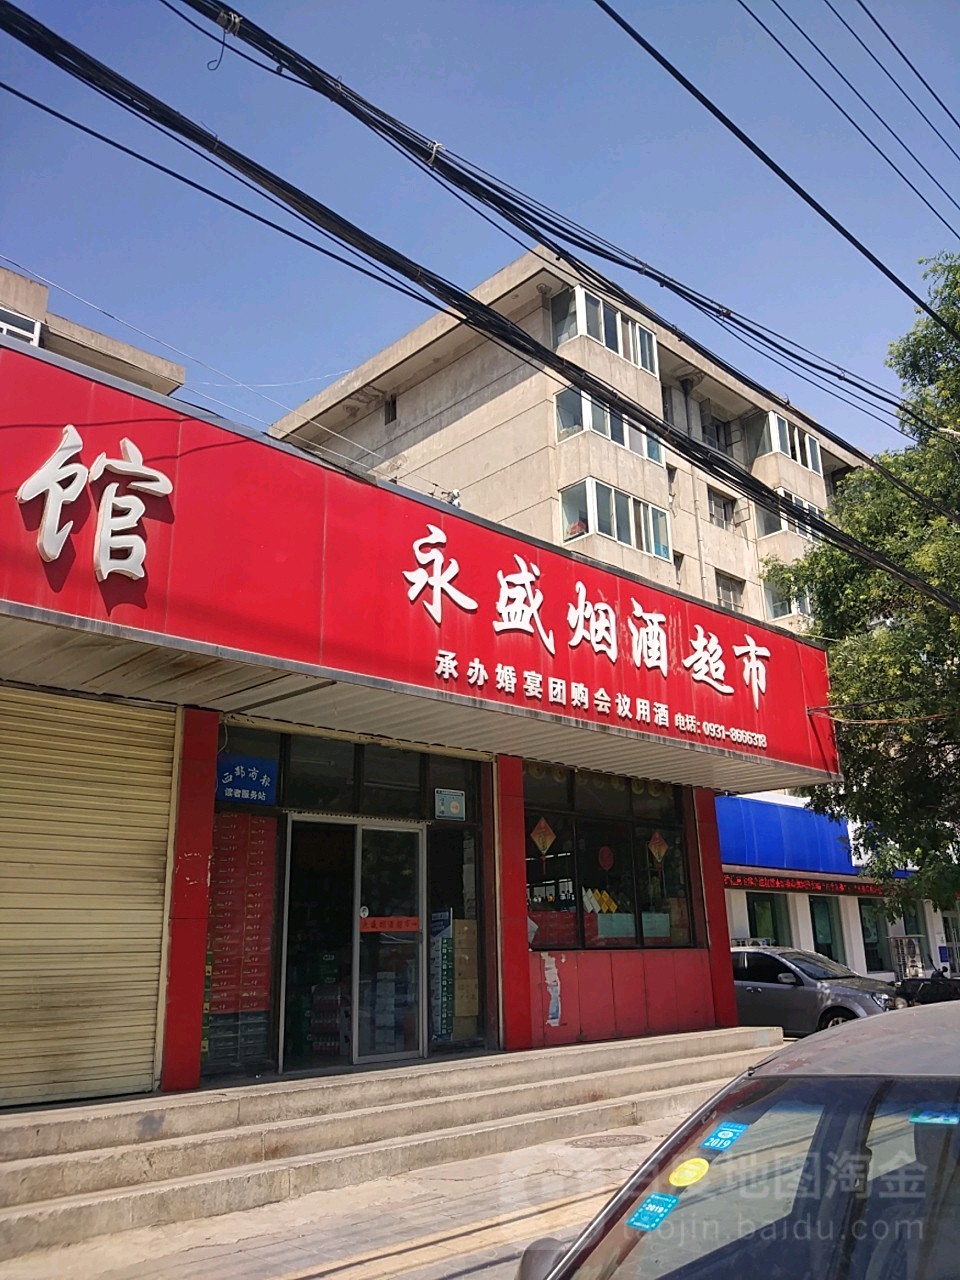 永盛煙酒超市(飛天路店)